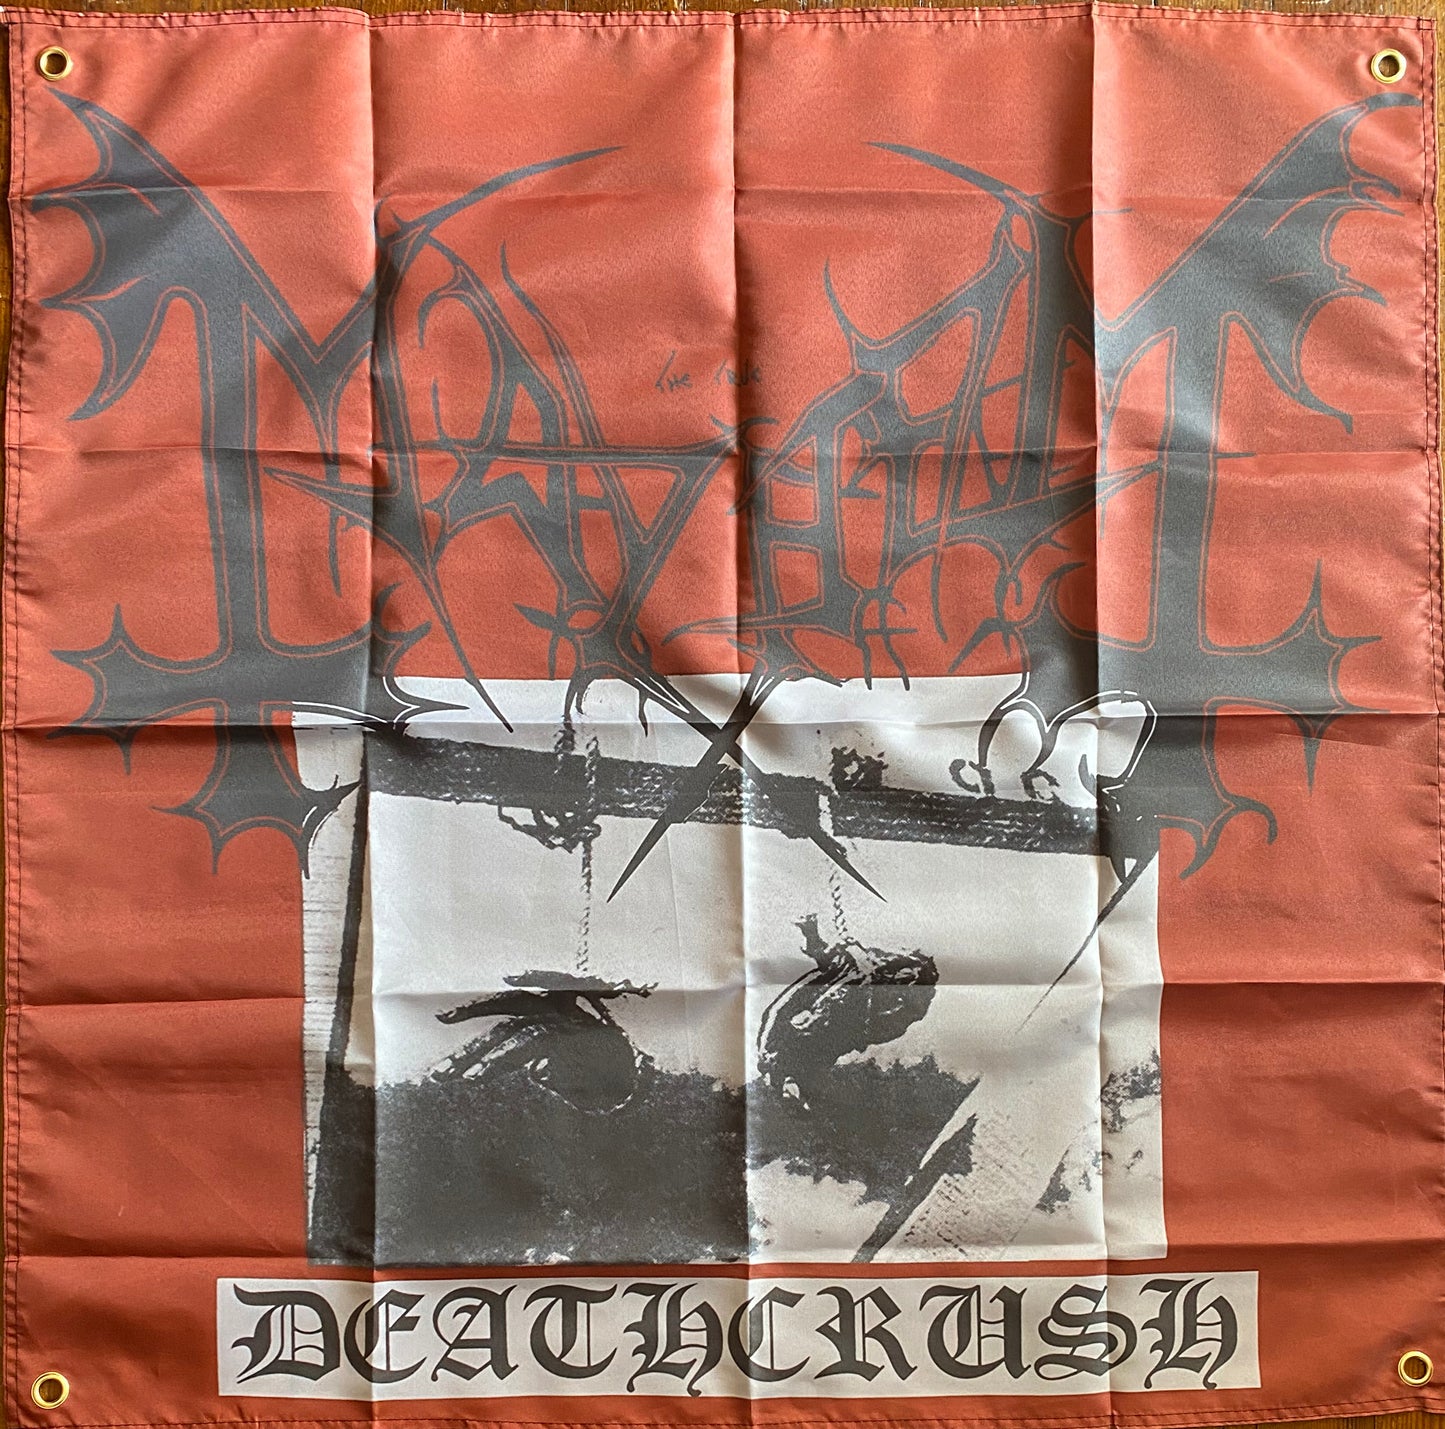 Mayhem " Deathcrush LP " Banner / Tapestry / Flag